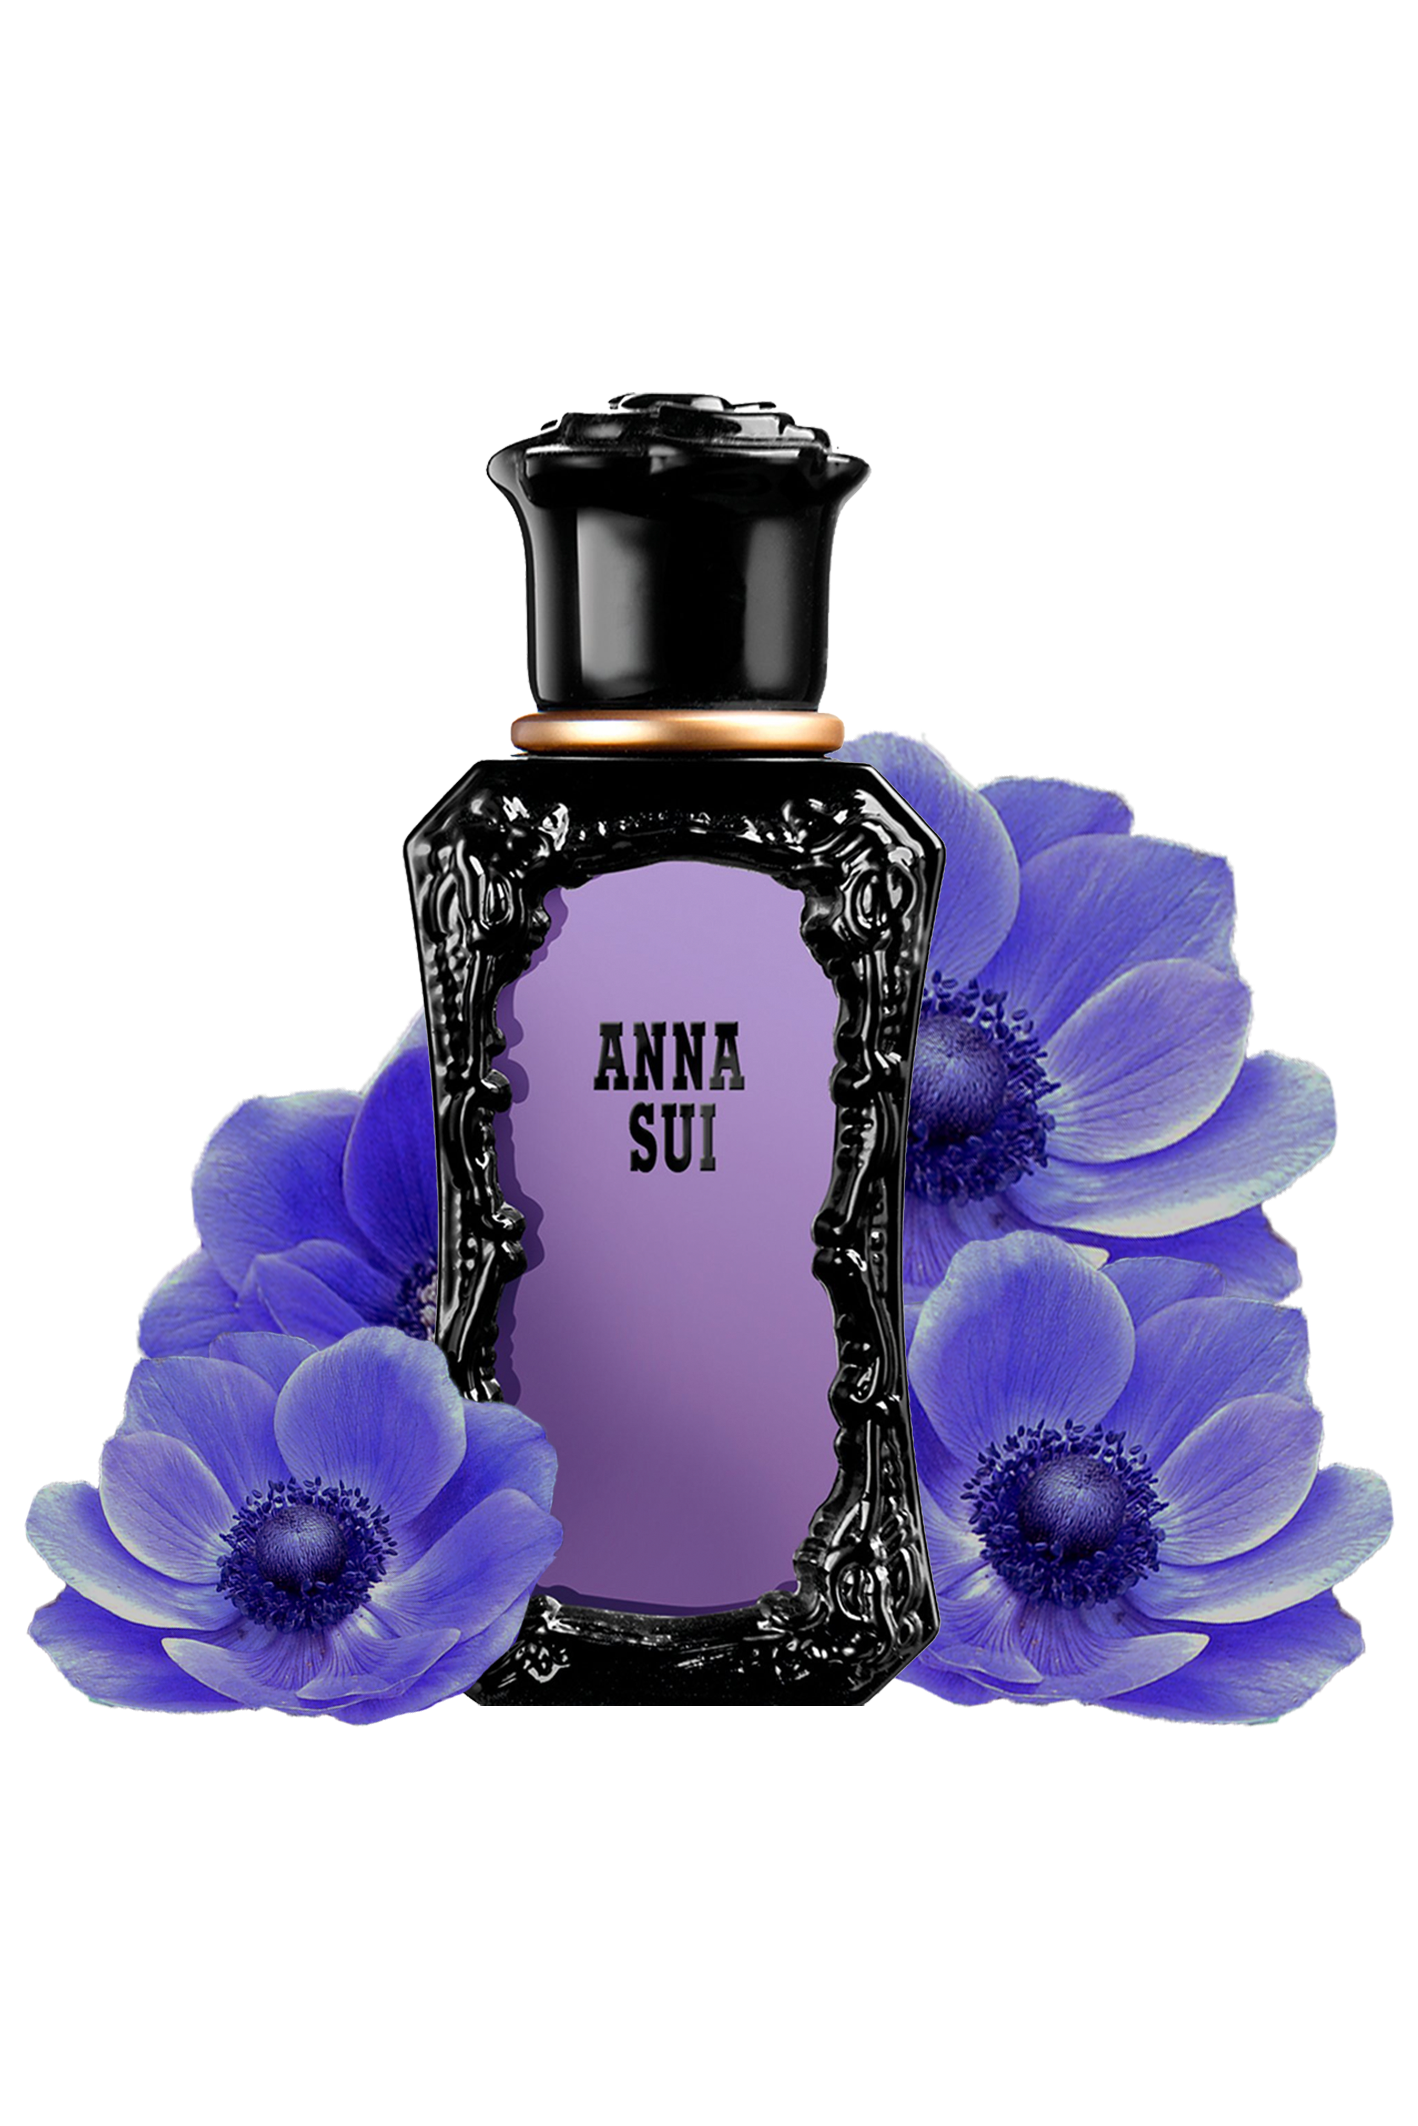 Die schwarz-violette Flasche ist im Art-Deco-Stil gehalten, der Zerstäuber befindet sich unter einem schwarzen Deckel mit einem goldenen Ring